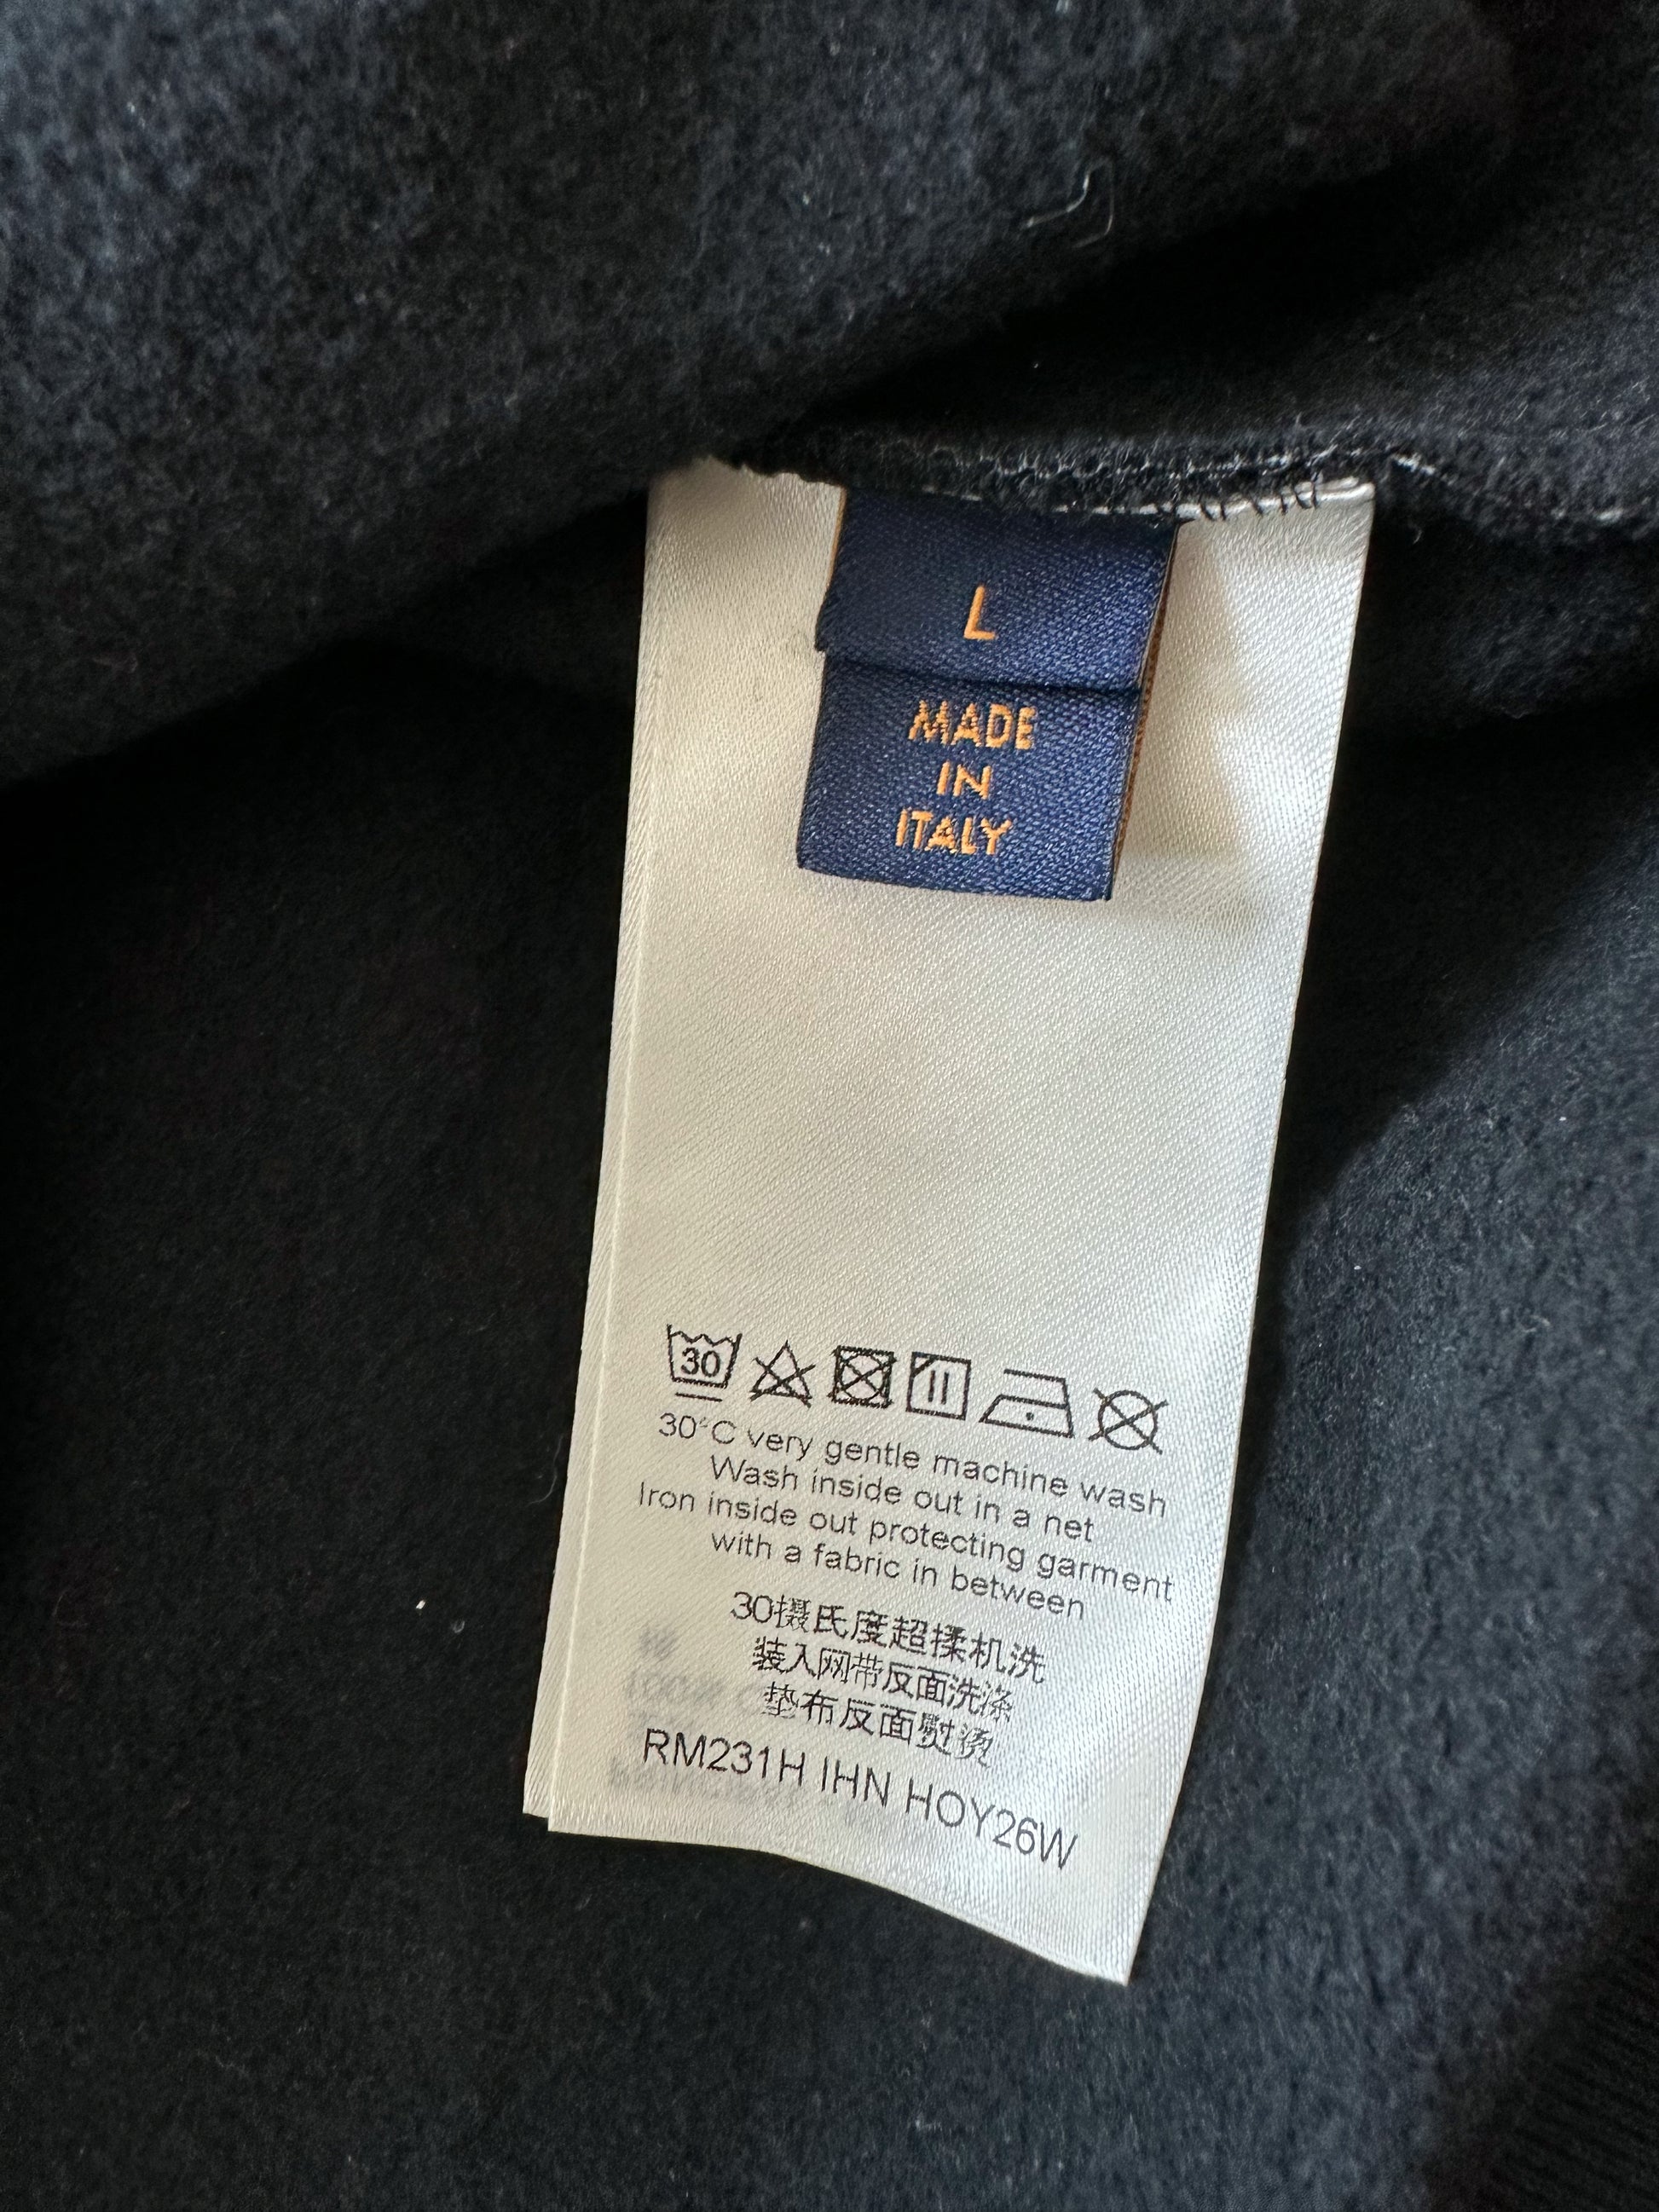 Louis Vuitton Yayoi Kusama Blue Dotted Pattern T-Shirt – Savonches